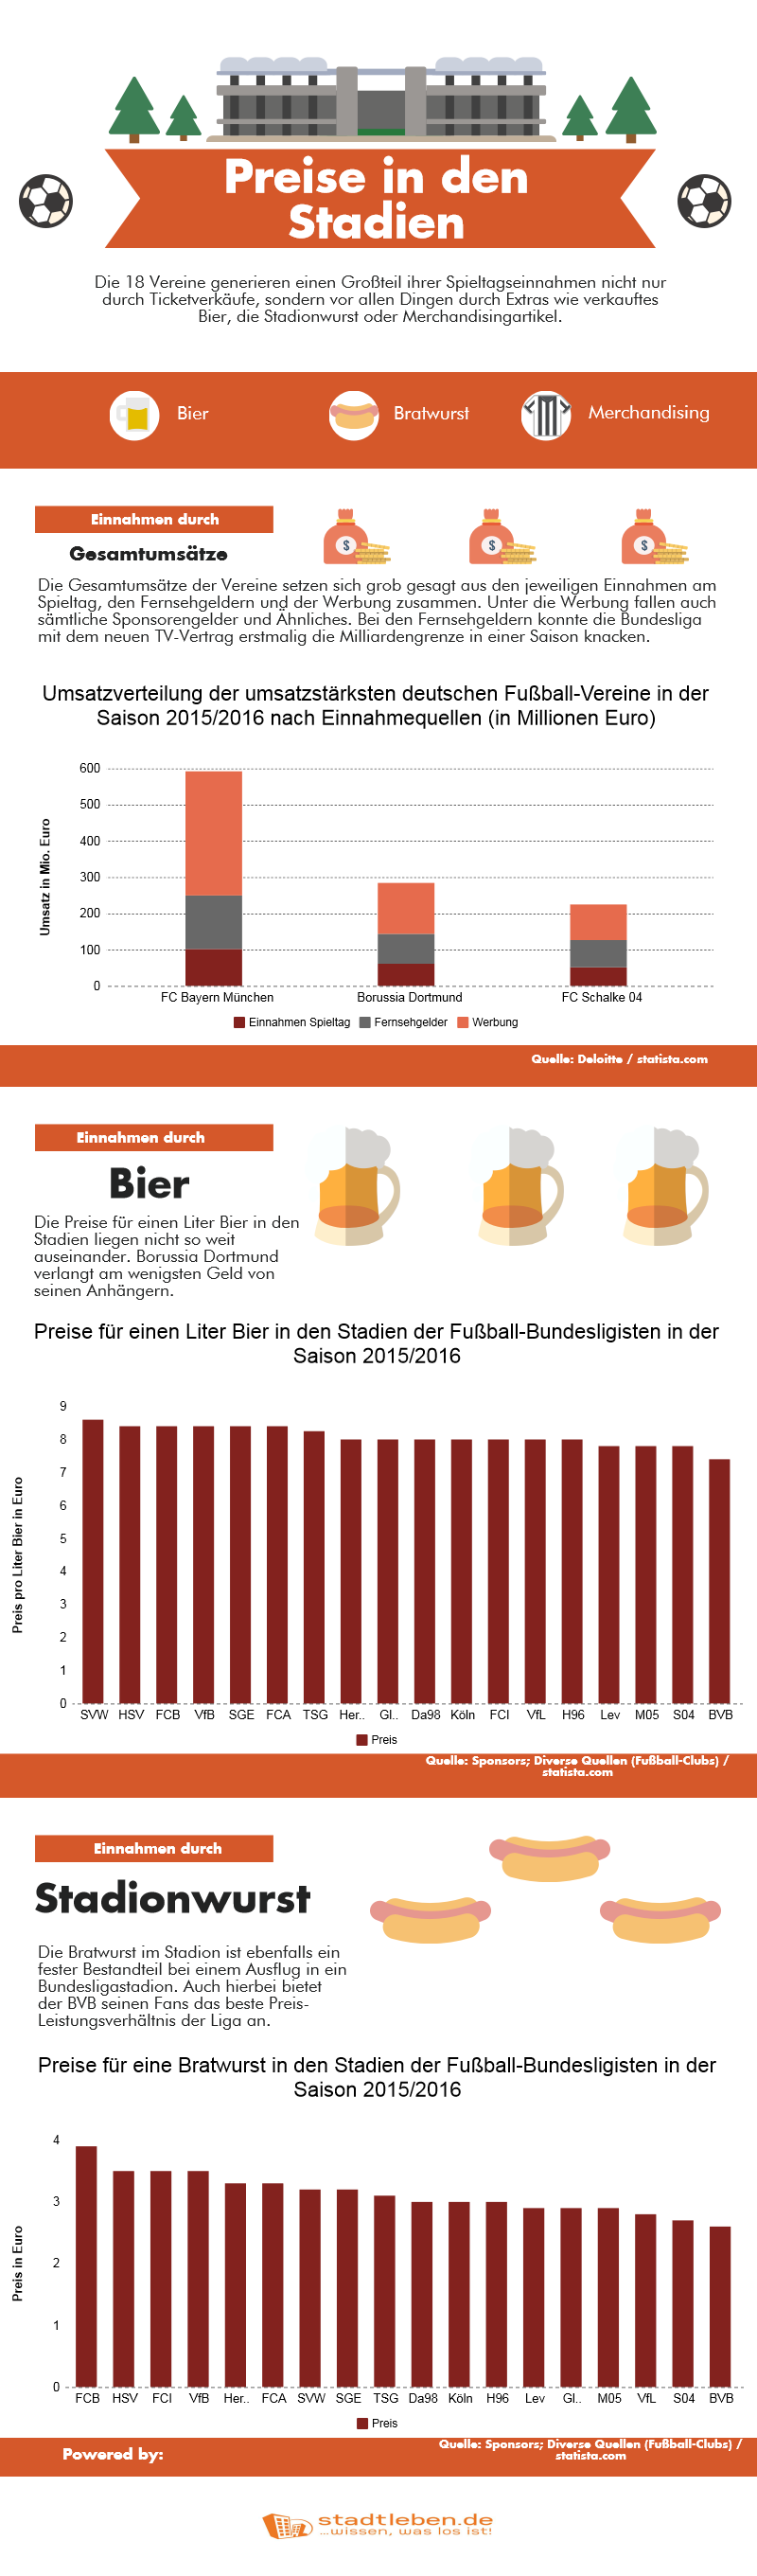 Infografik zu den Bier- und Bratwurstpreisen in den Stadien der Bundesliga